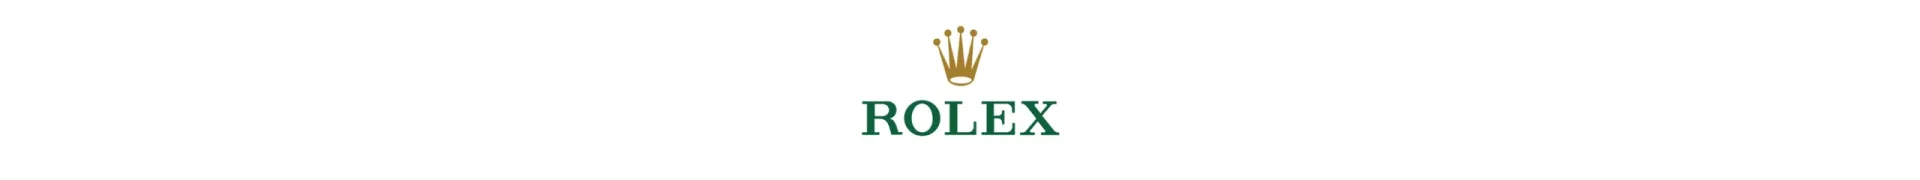 rolex-logo-landscape